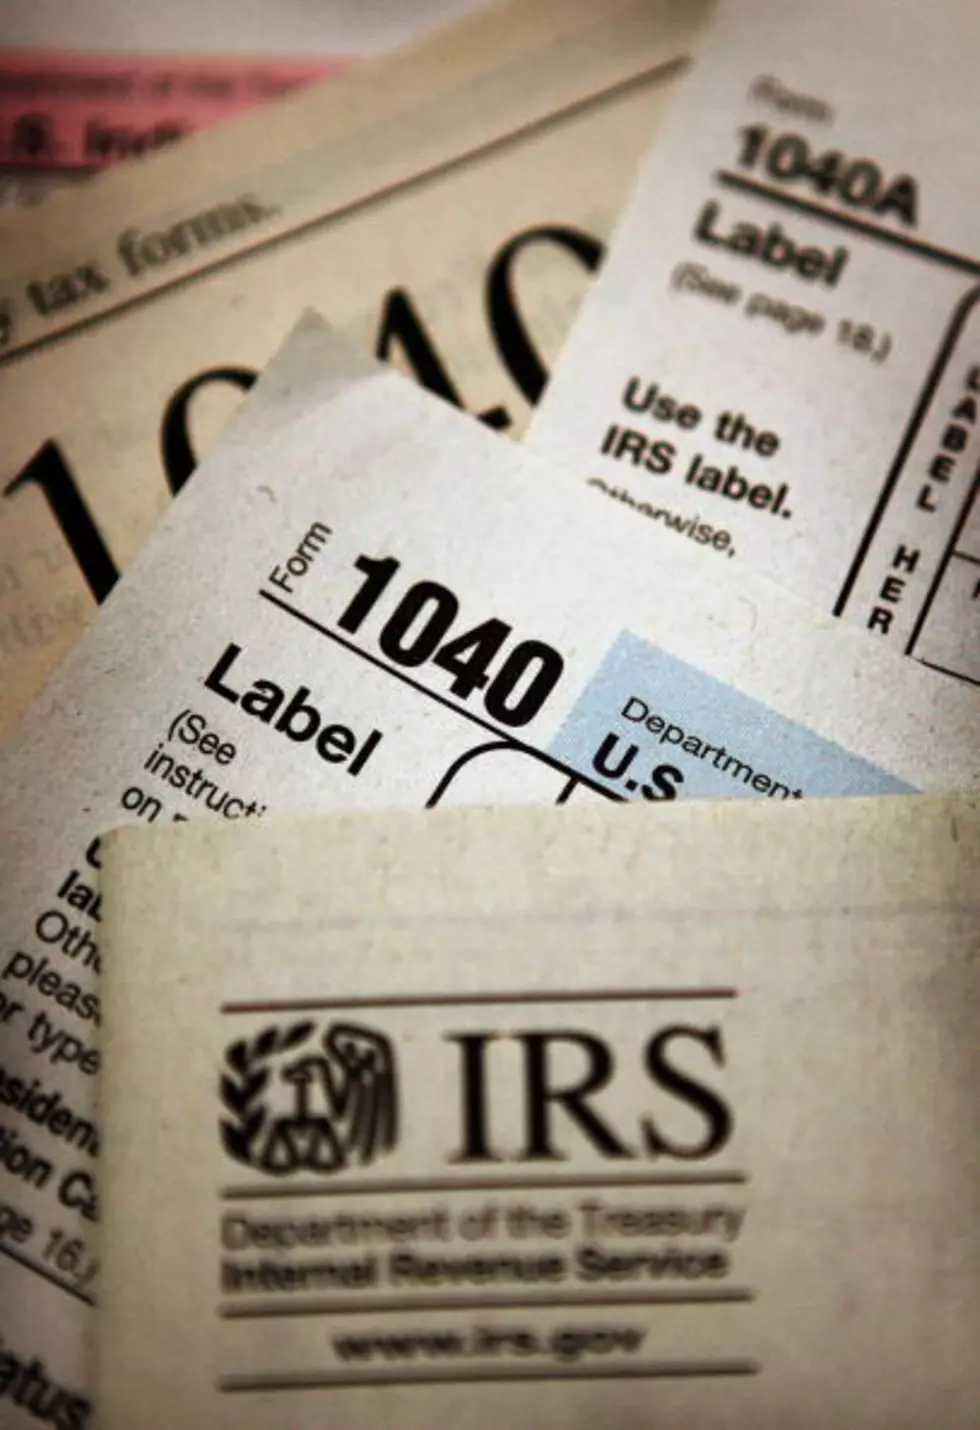 IRS Scam!